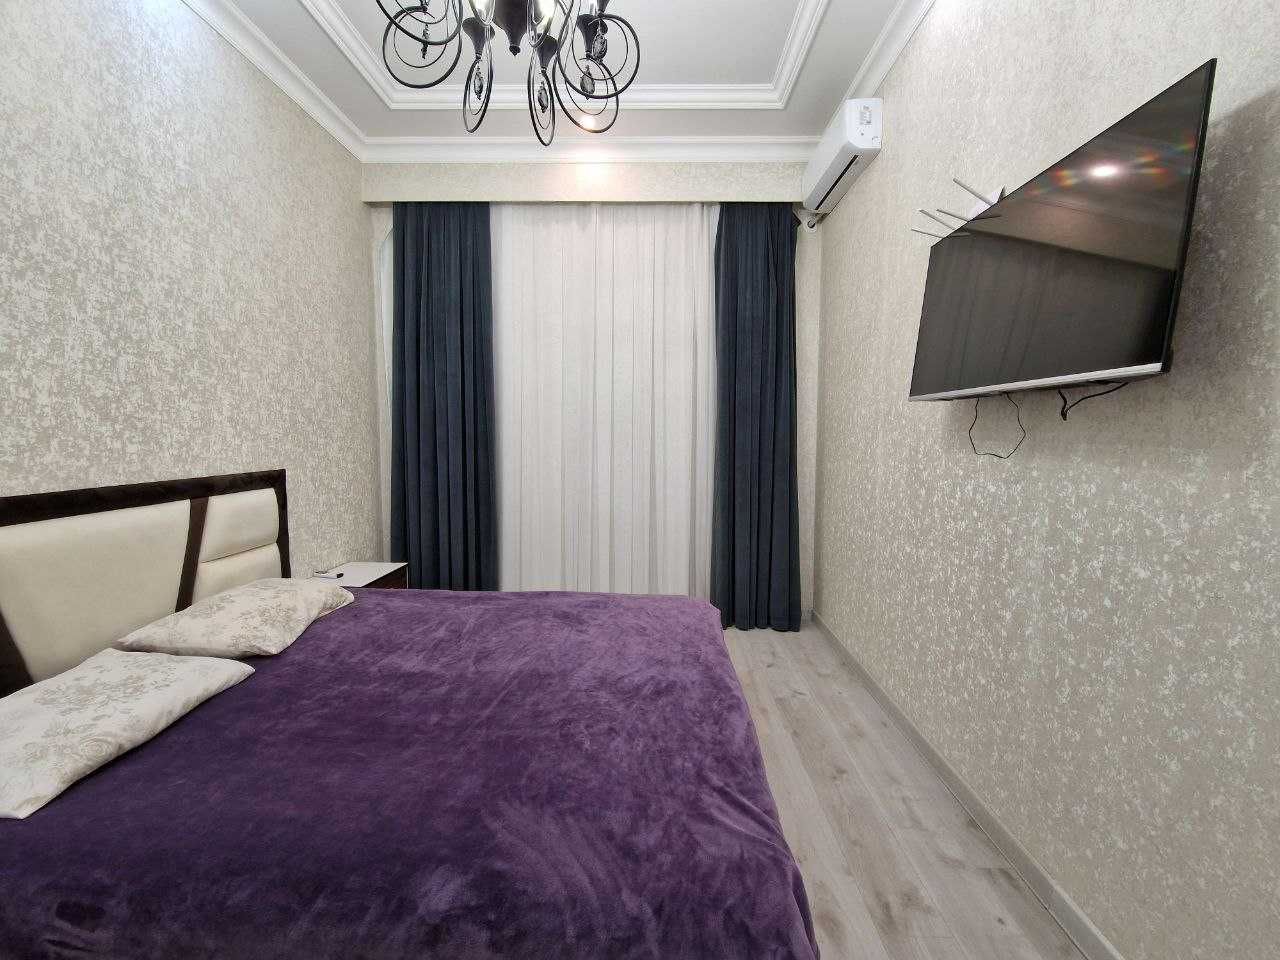 Продается квартира новая, евроремонт в Ташкент Сити!#naka2984